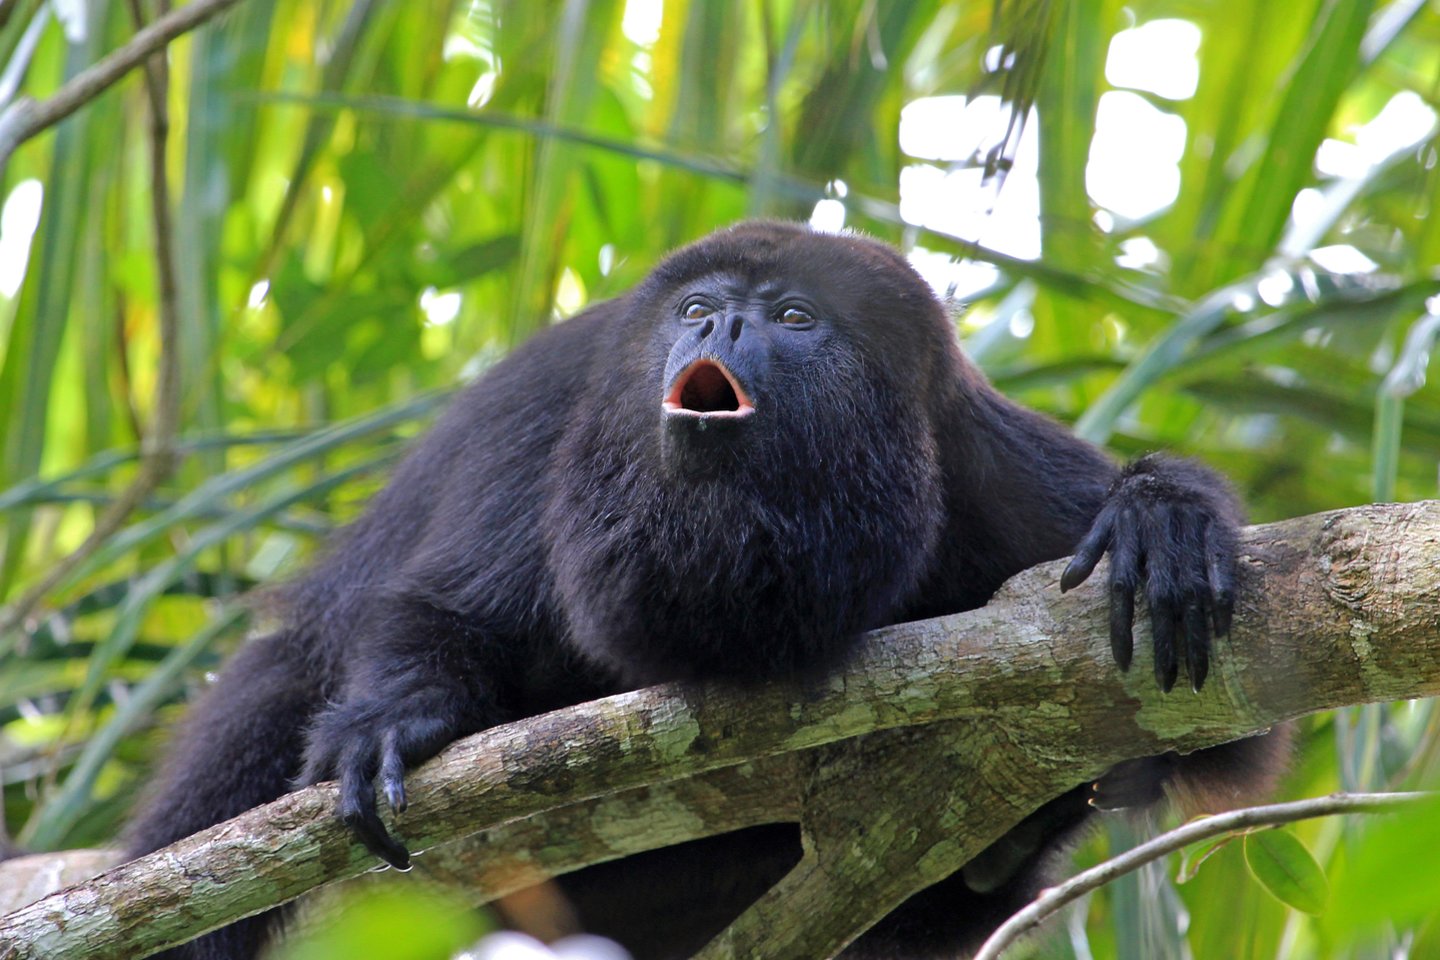  Staugūnai yra vieni iš nedaugelio beždžionių, kurios suka lizdus, o taip pat ir vieni garsiausių sutvėrimų gyvūnų pasaulyje.<br> 123RF nuotr.